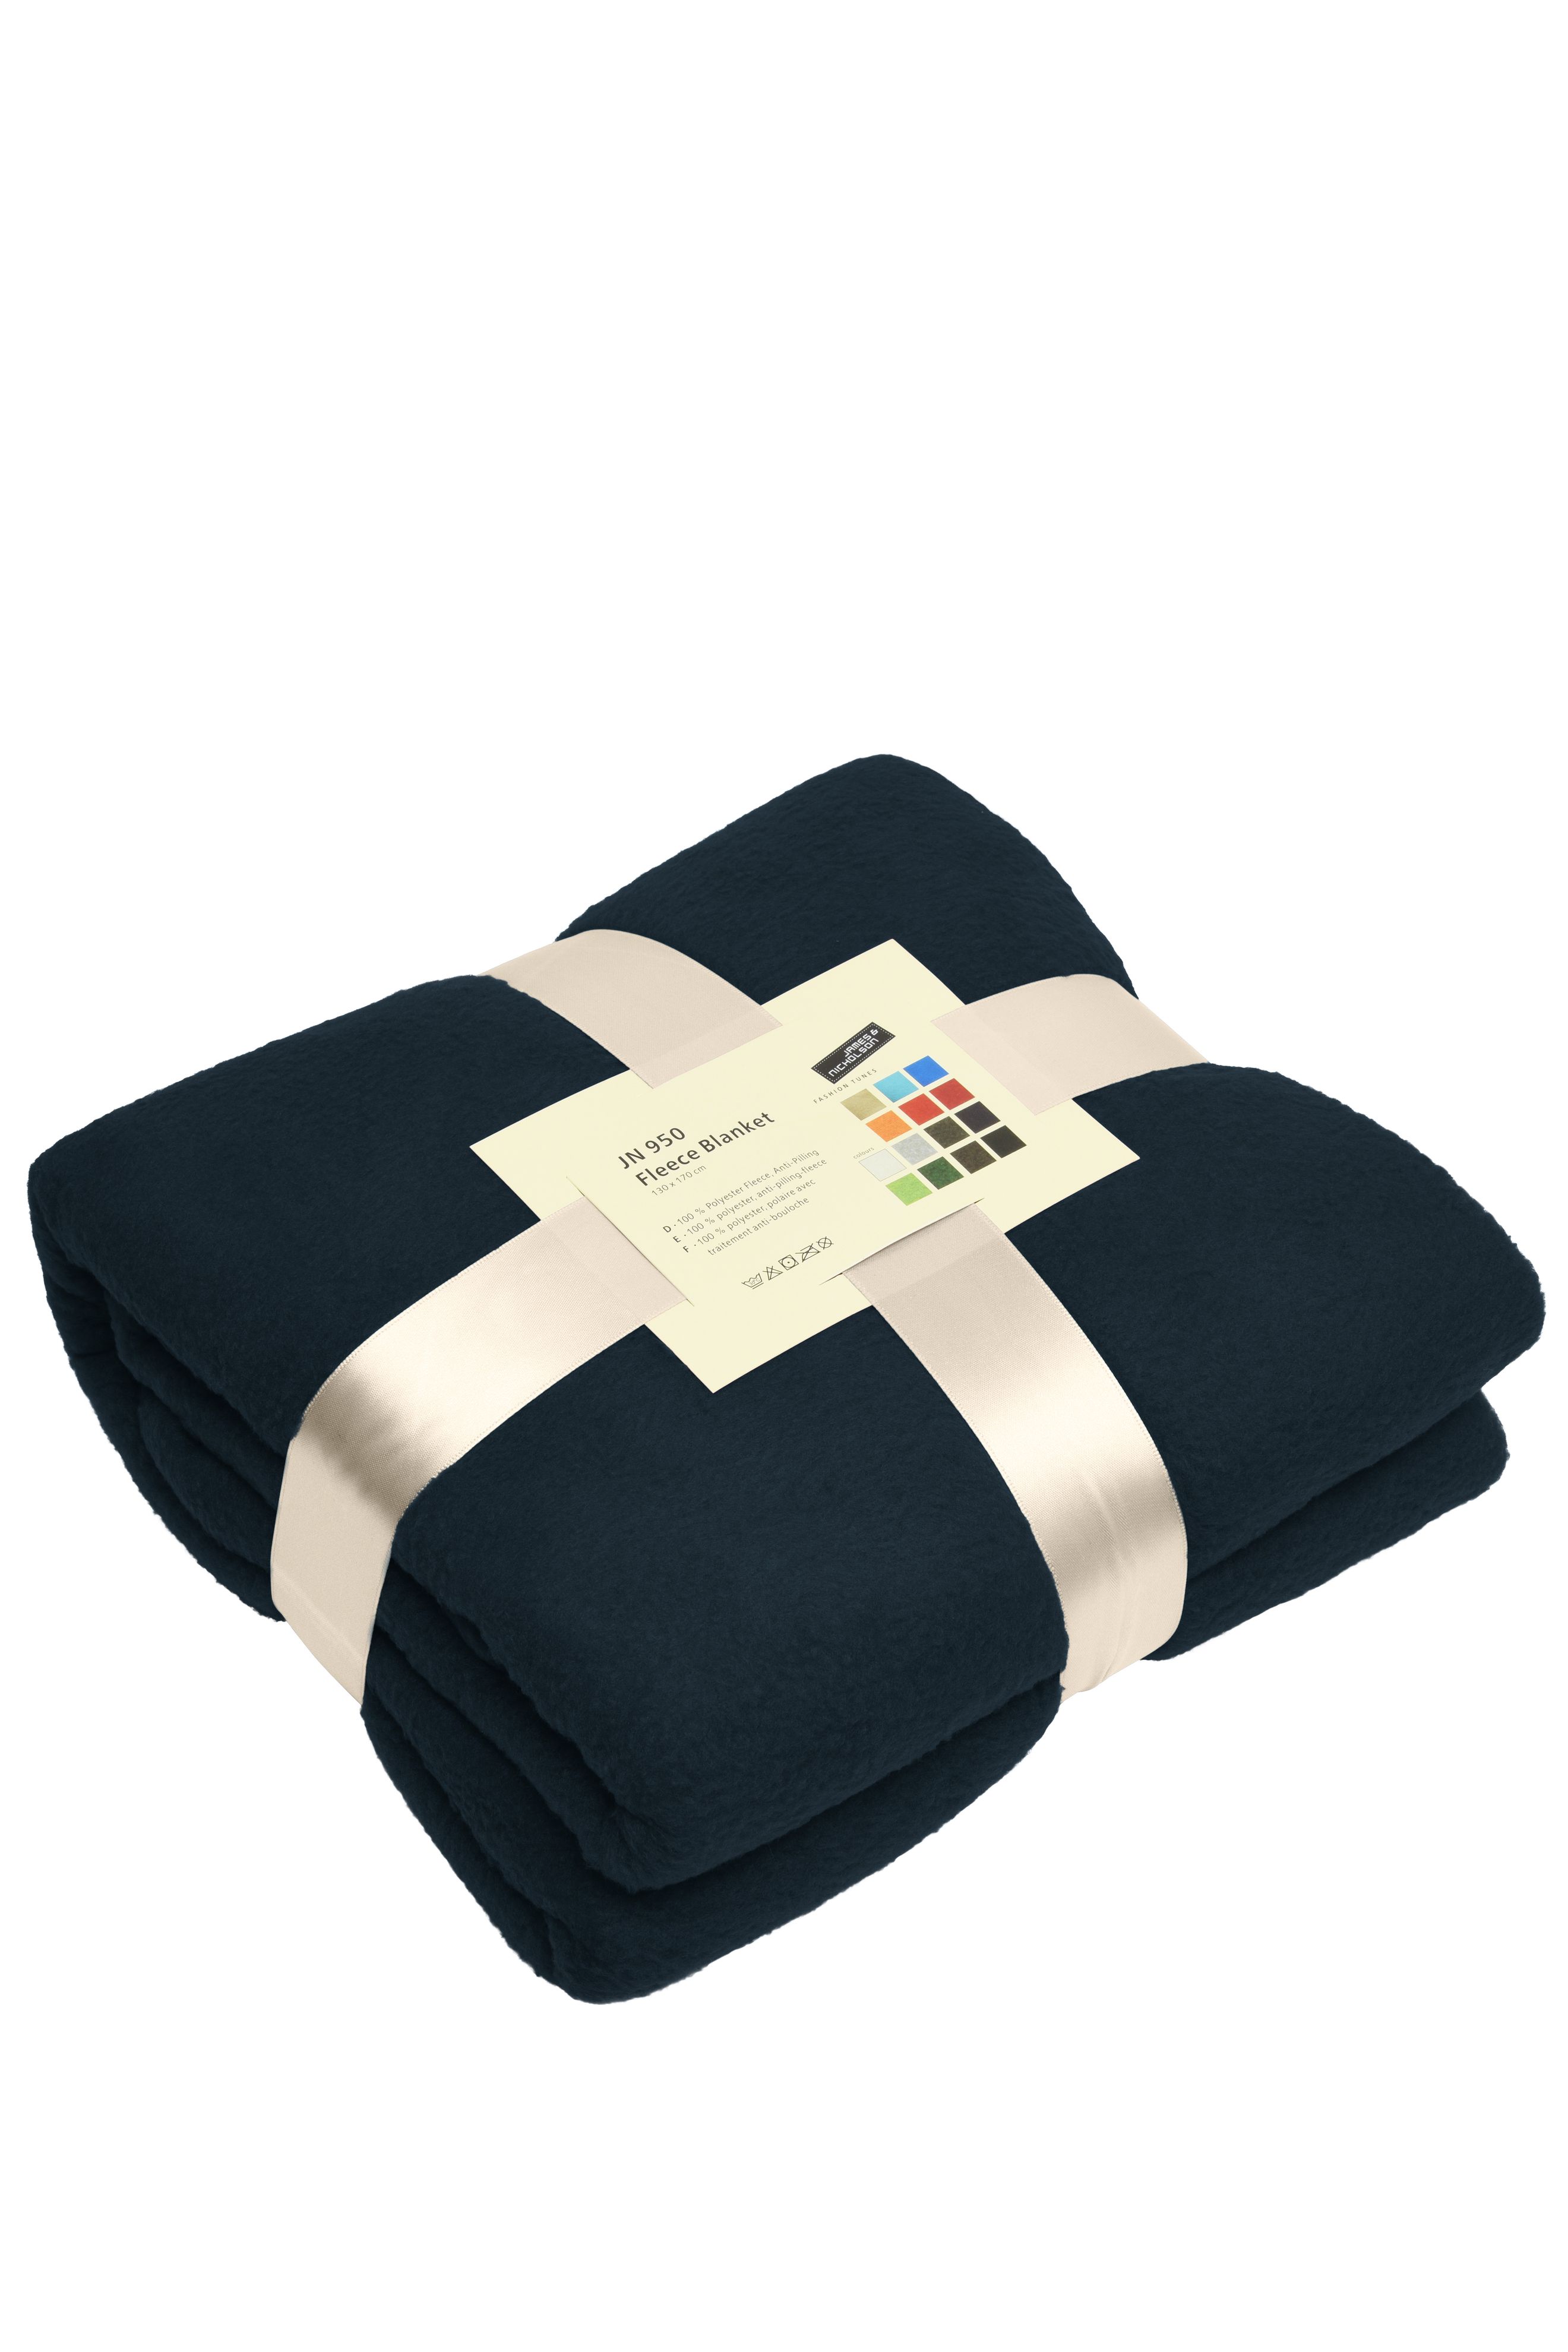 Fleece Blanket JN950 Vielseitig verwendbare Fleecedecke für Gastronomie und Freizeit